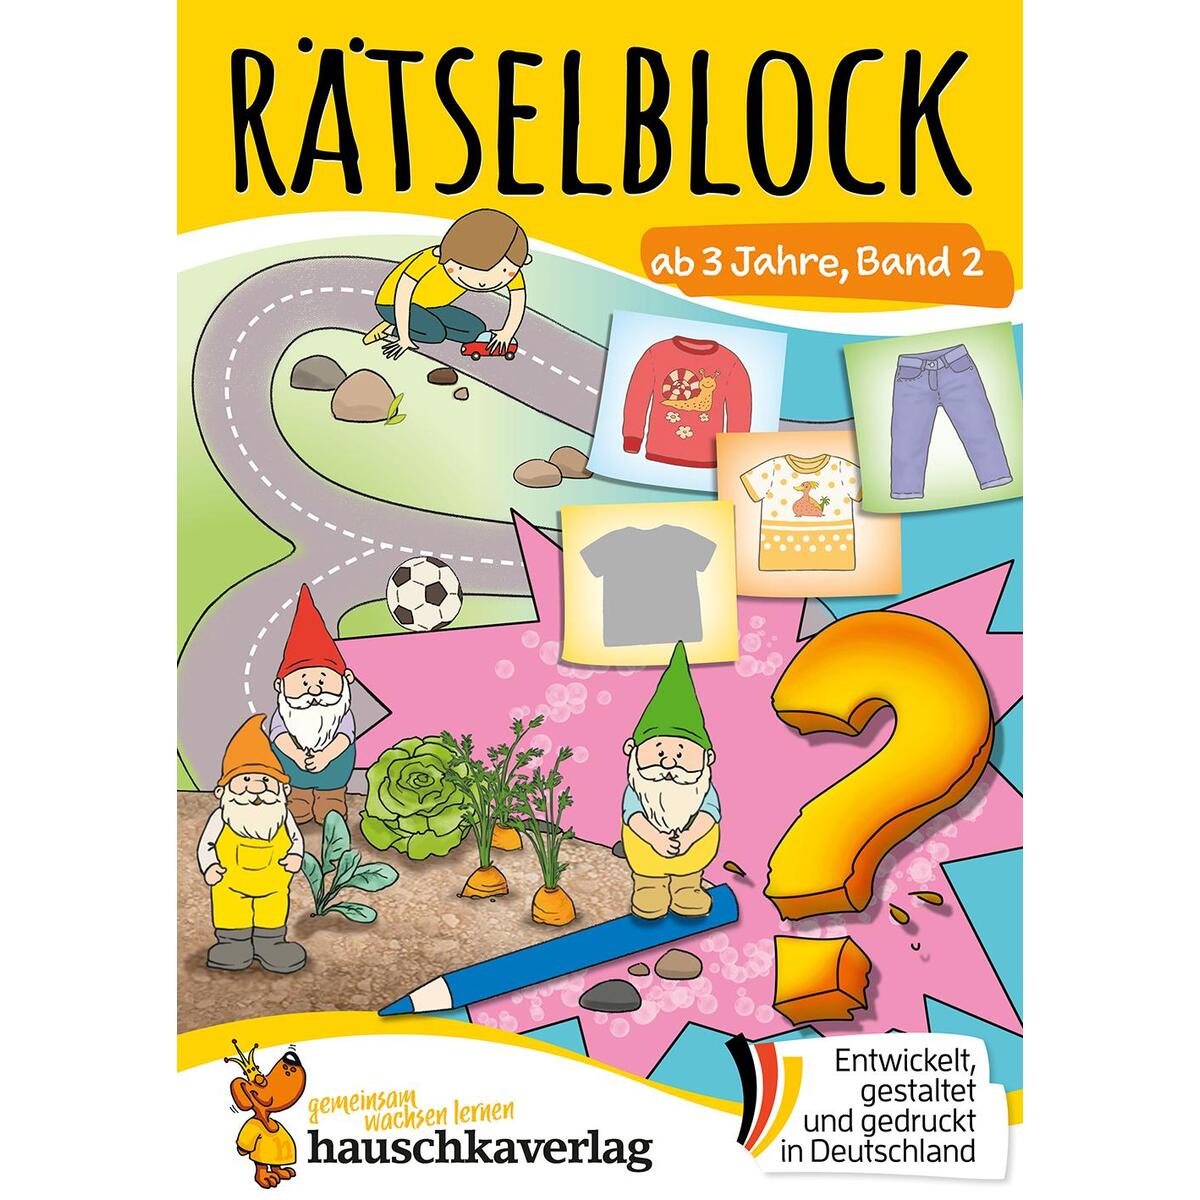 Rätselblock ab 3 Jahre, Band 2 von Hauschka Verlag GmbH